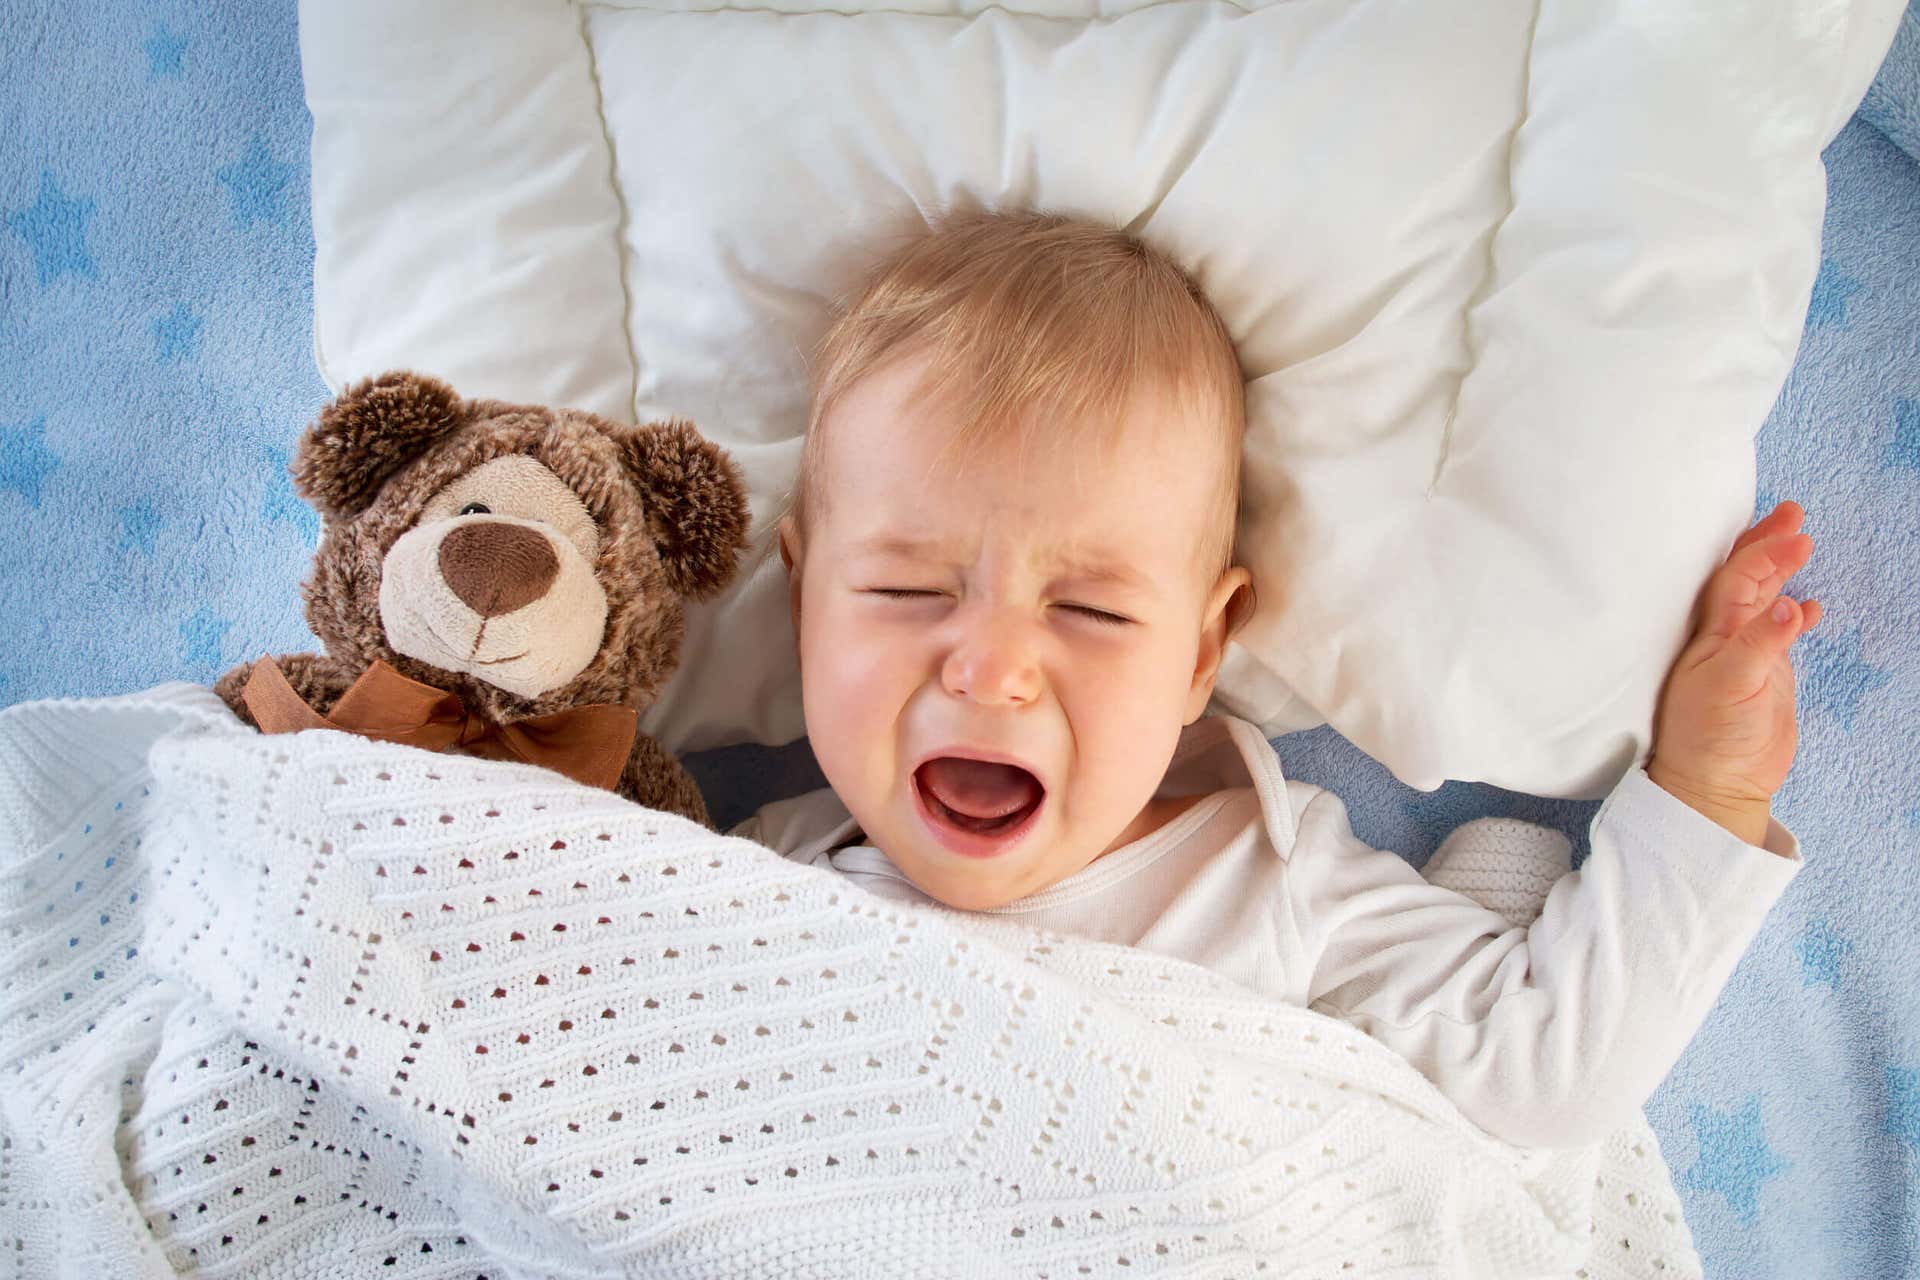 Si el bebé llora después de alimentarse puede deberse a problemas en la alimentación o la lactancia.